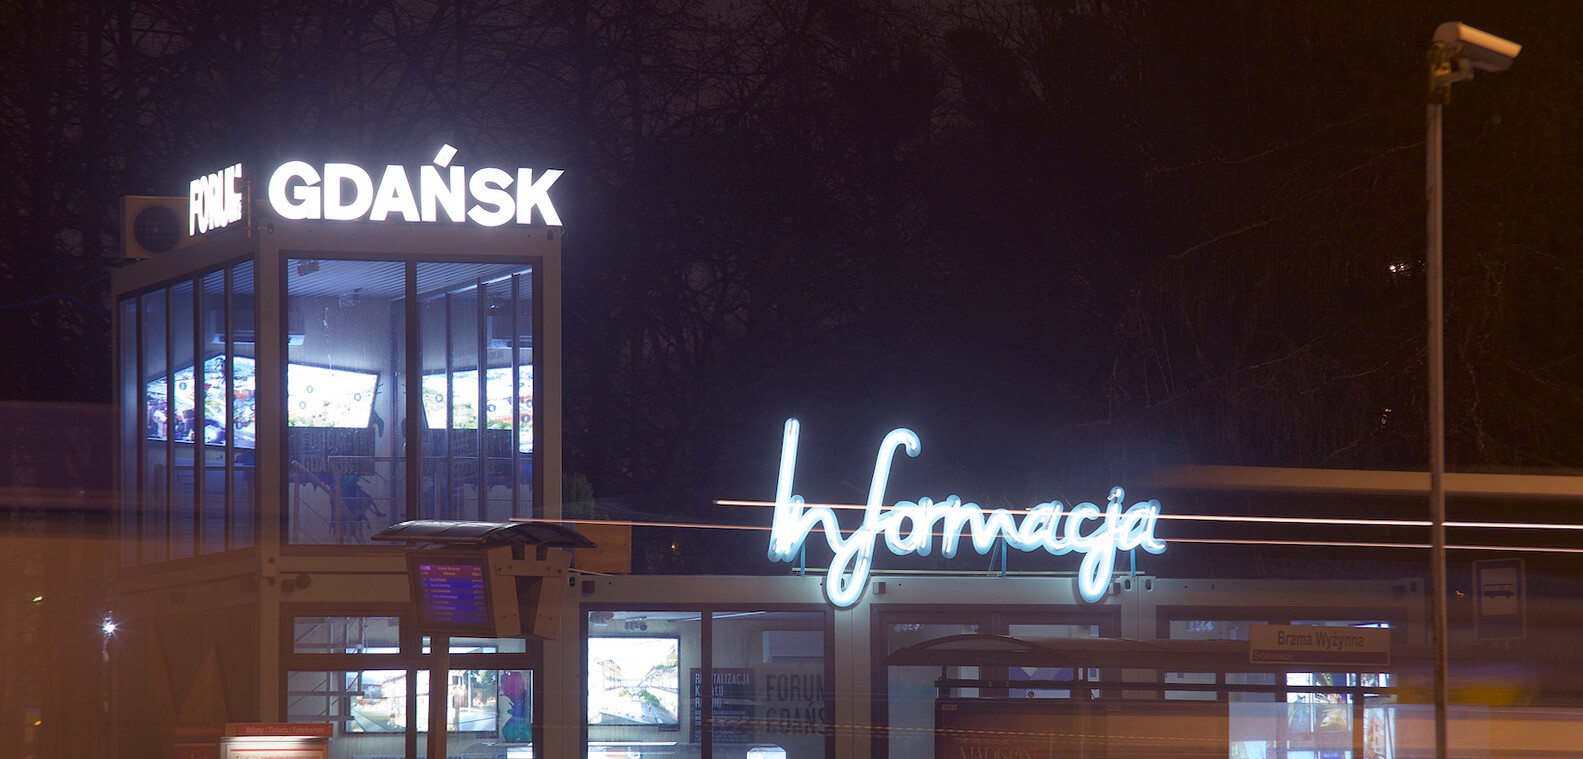 Direction Forum Gdańsk - Forum de Gdansk - panneau d'information composé d'enseignes au néon, montées sur un cadre, placé au-dessus de l'entrée